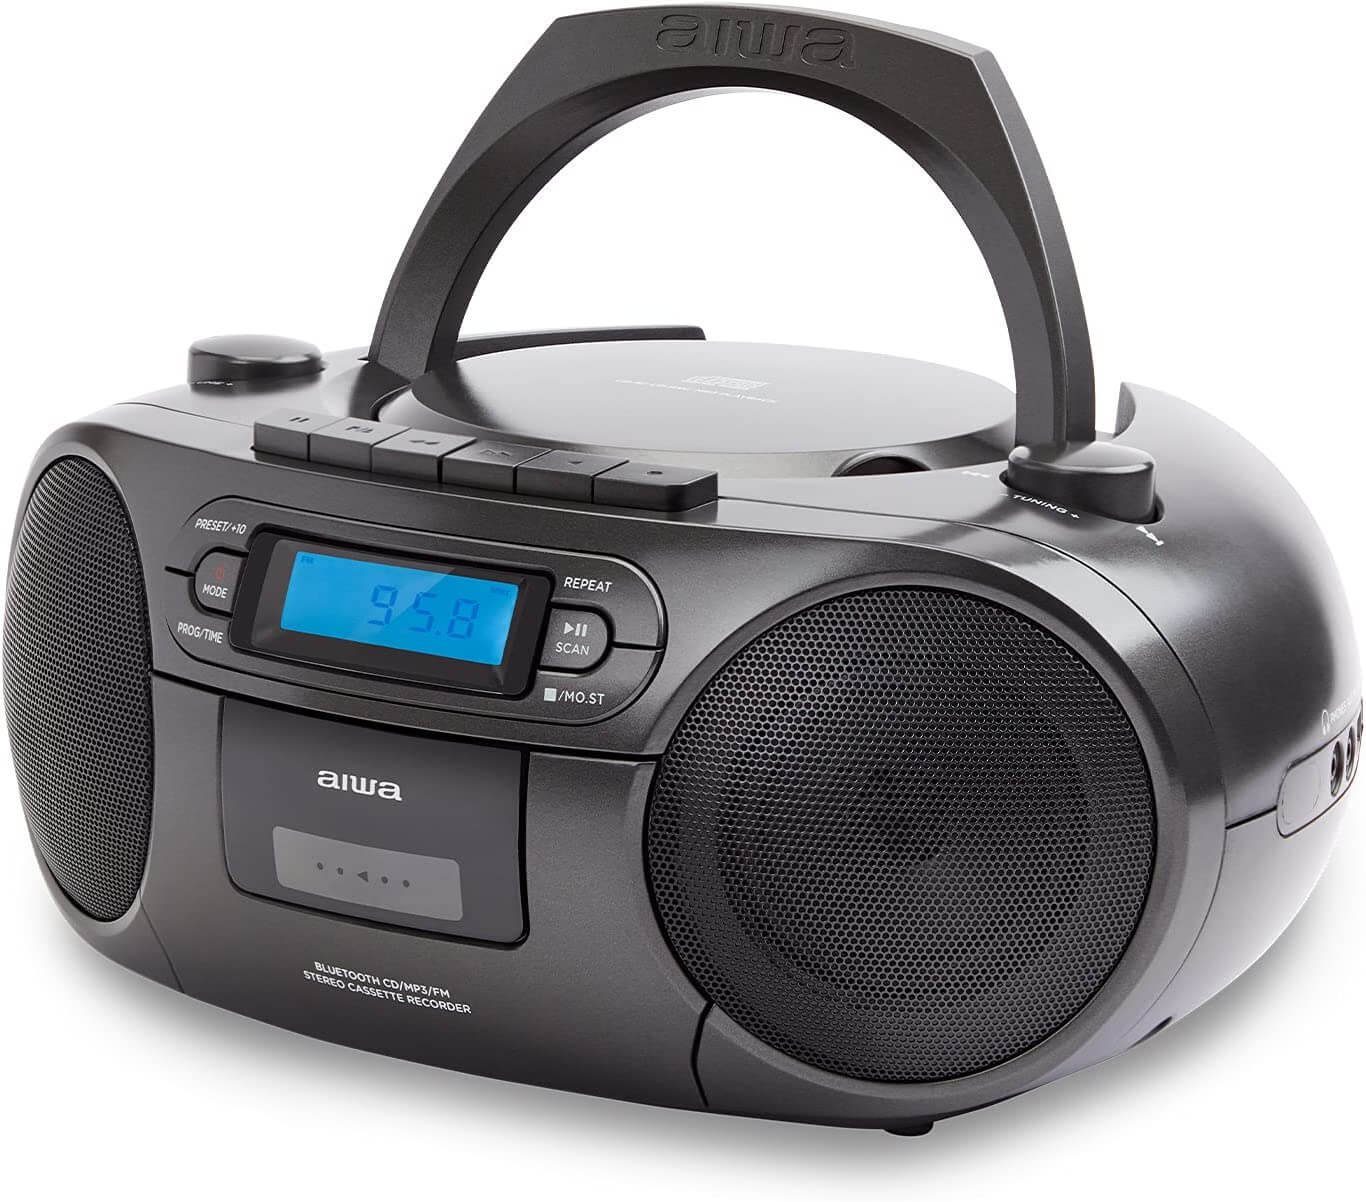 Aiwa »BBTC-550 Tragbarer CD Player mit Radio, Kassette, Bluetooth und USB«  tragbarer CD-Player (Digitaluhr mit 24h Anzeigeformat 6 W RMS  Audio-Ausgangsleistung)